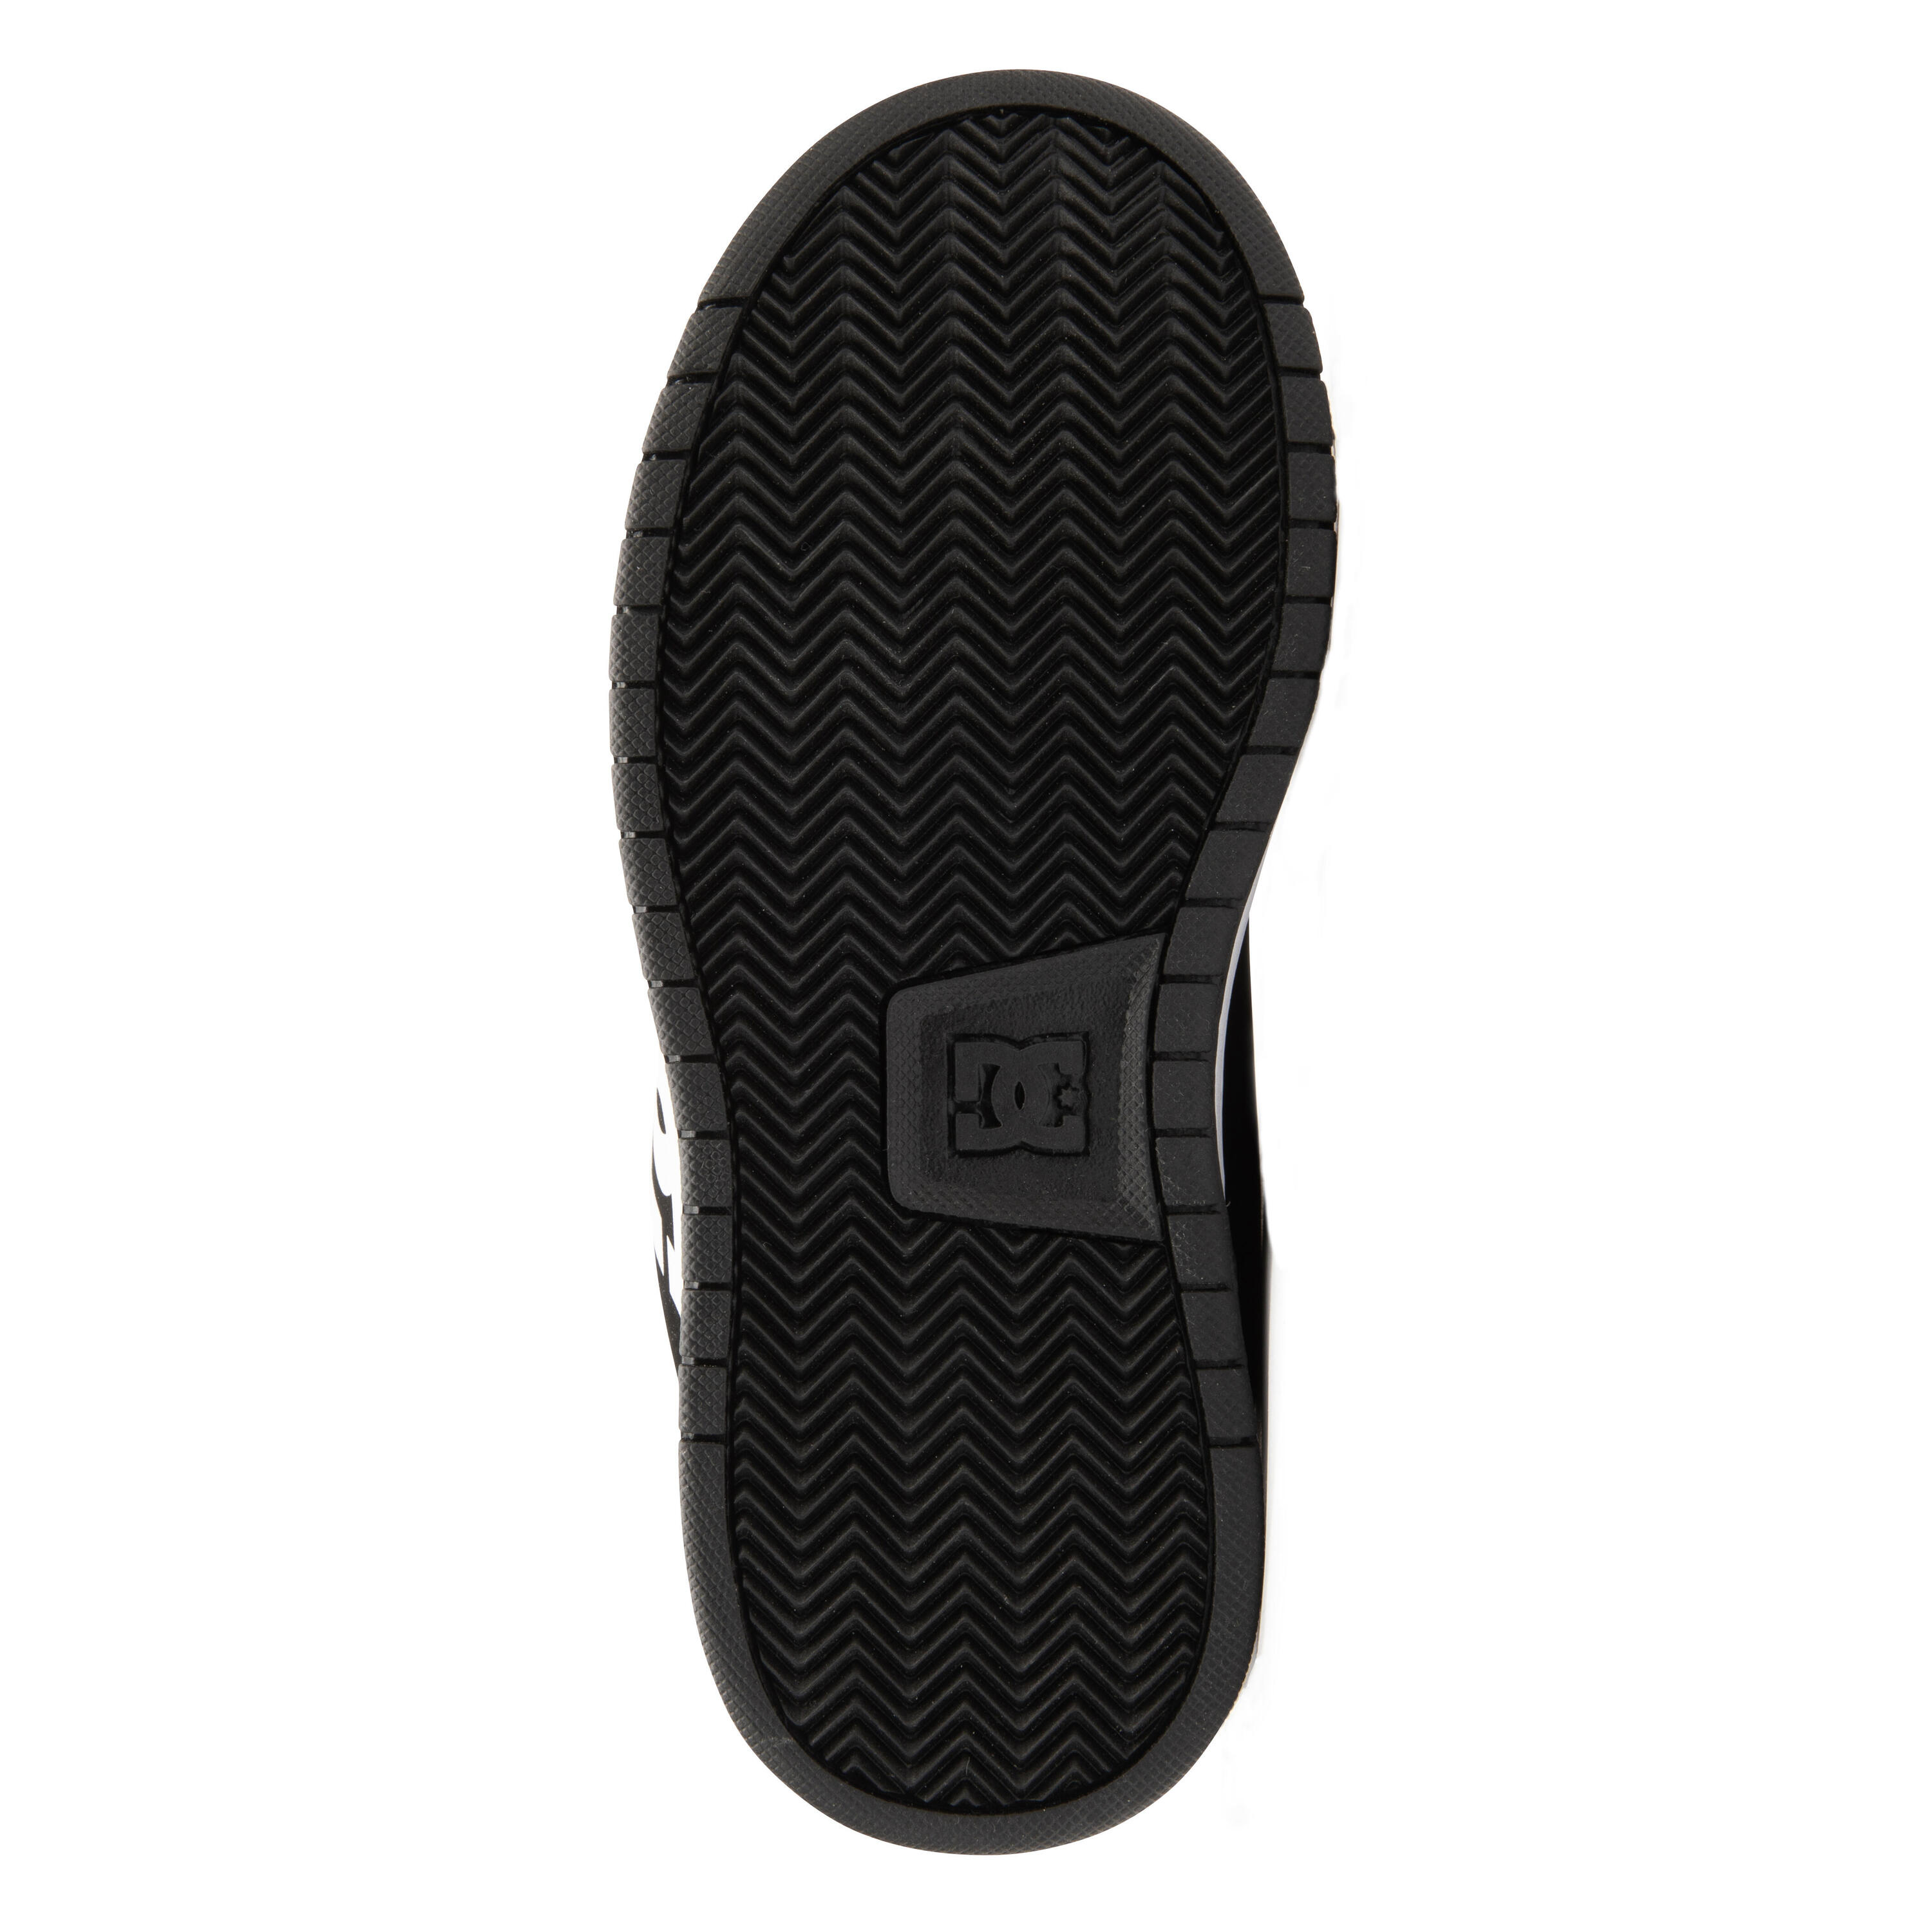 Kids' Skateboarding Shoes Gaveler - Black/White 6/11